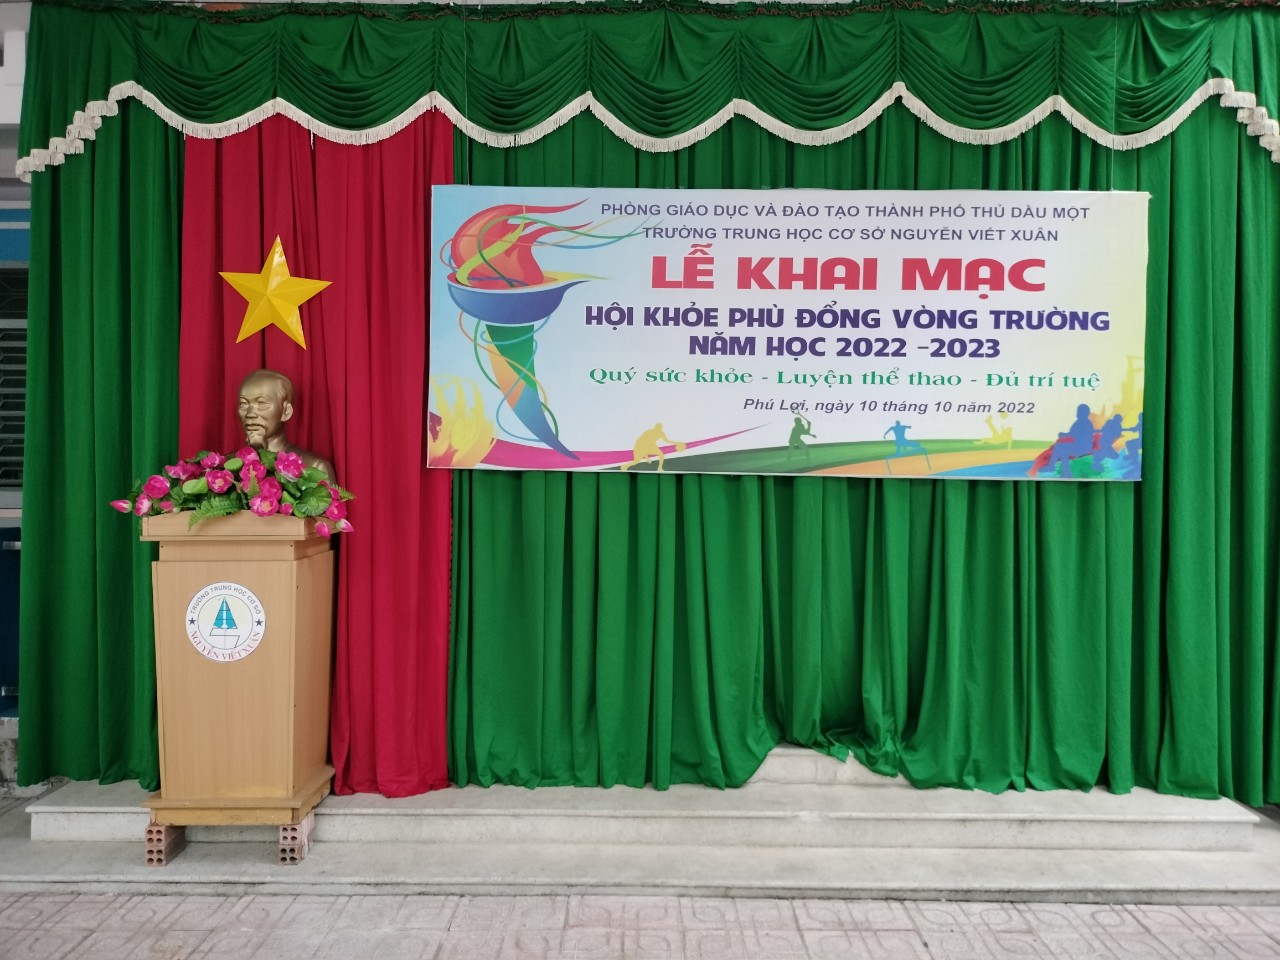 Trường THCS Nguyễn Viết Xuân tổ chức khai mạc Hội khỏe phù đổng vòng trường năm học 2022 - 2023